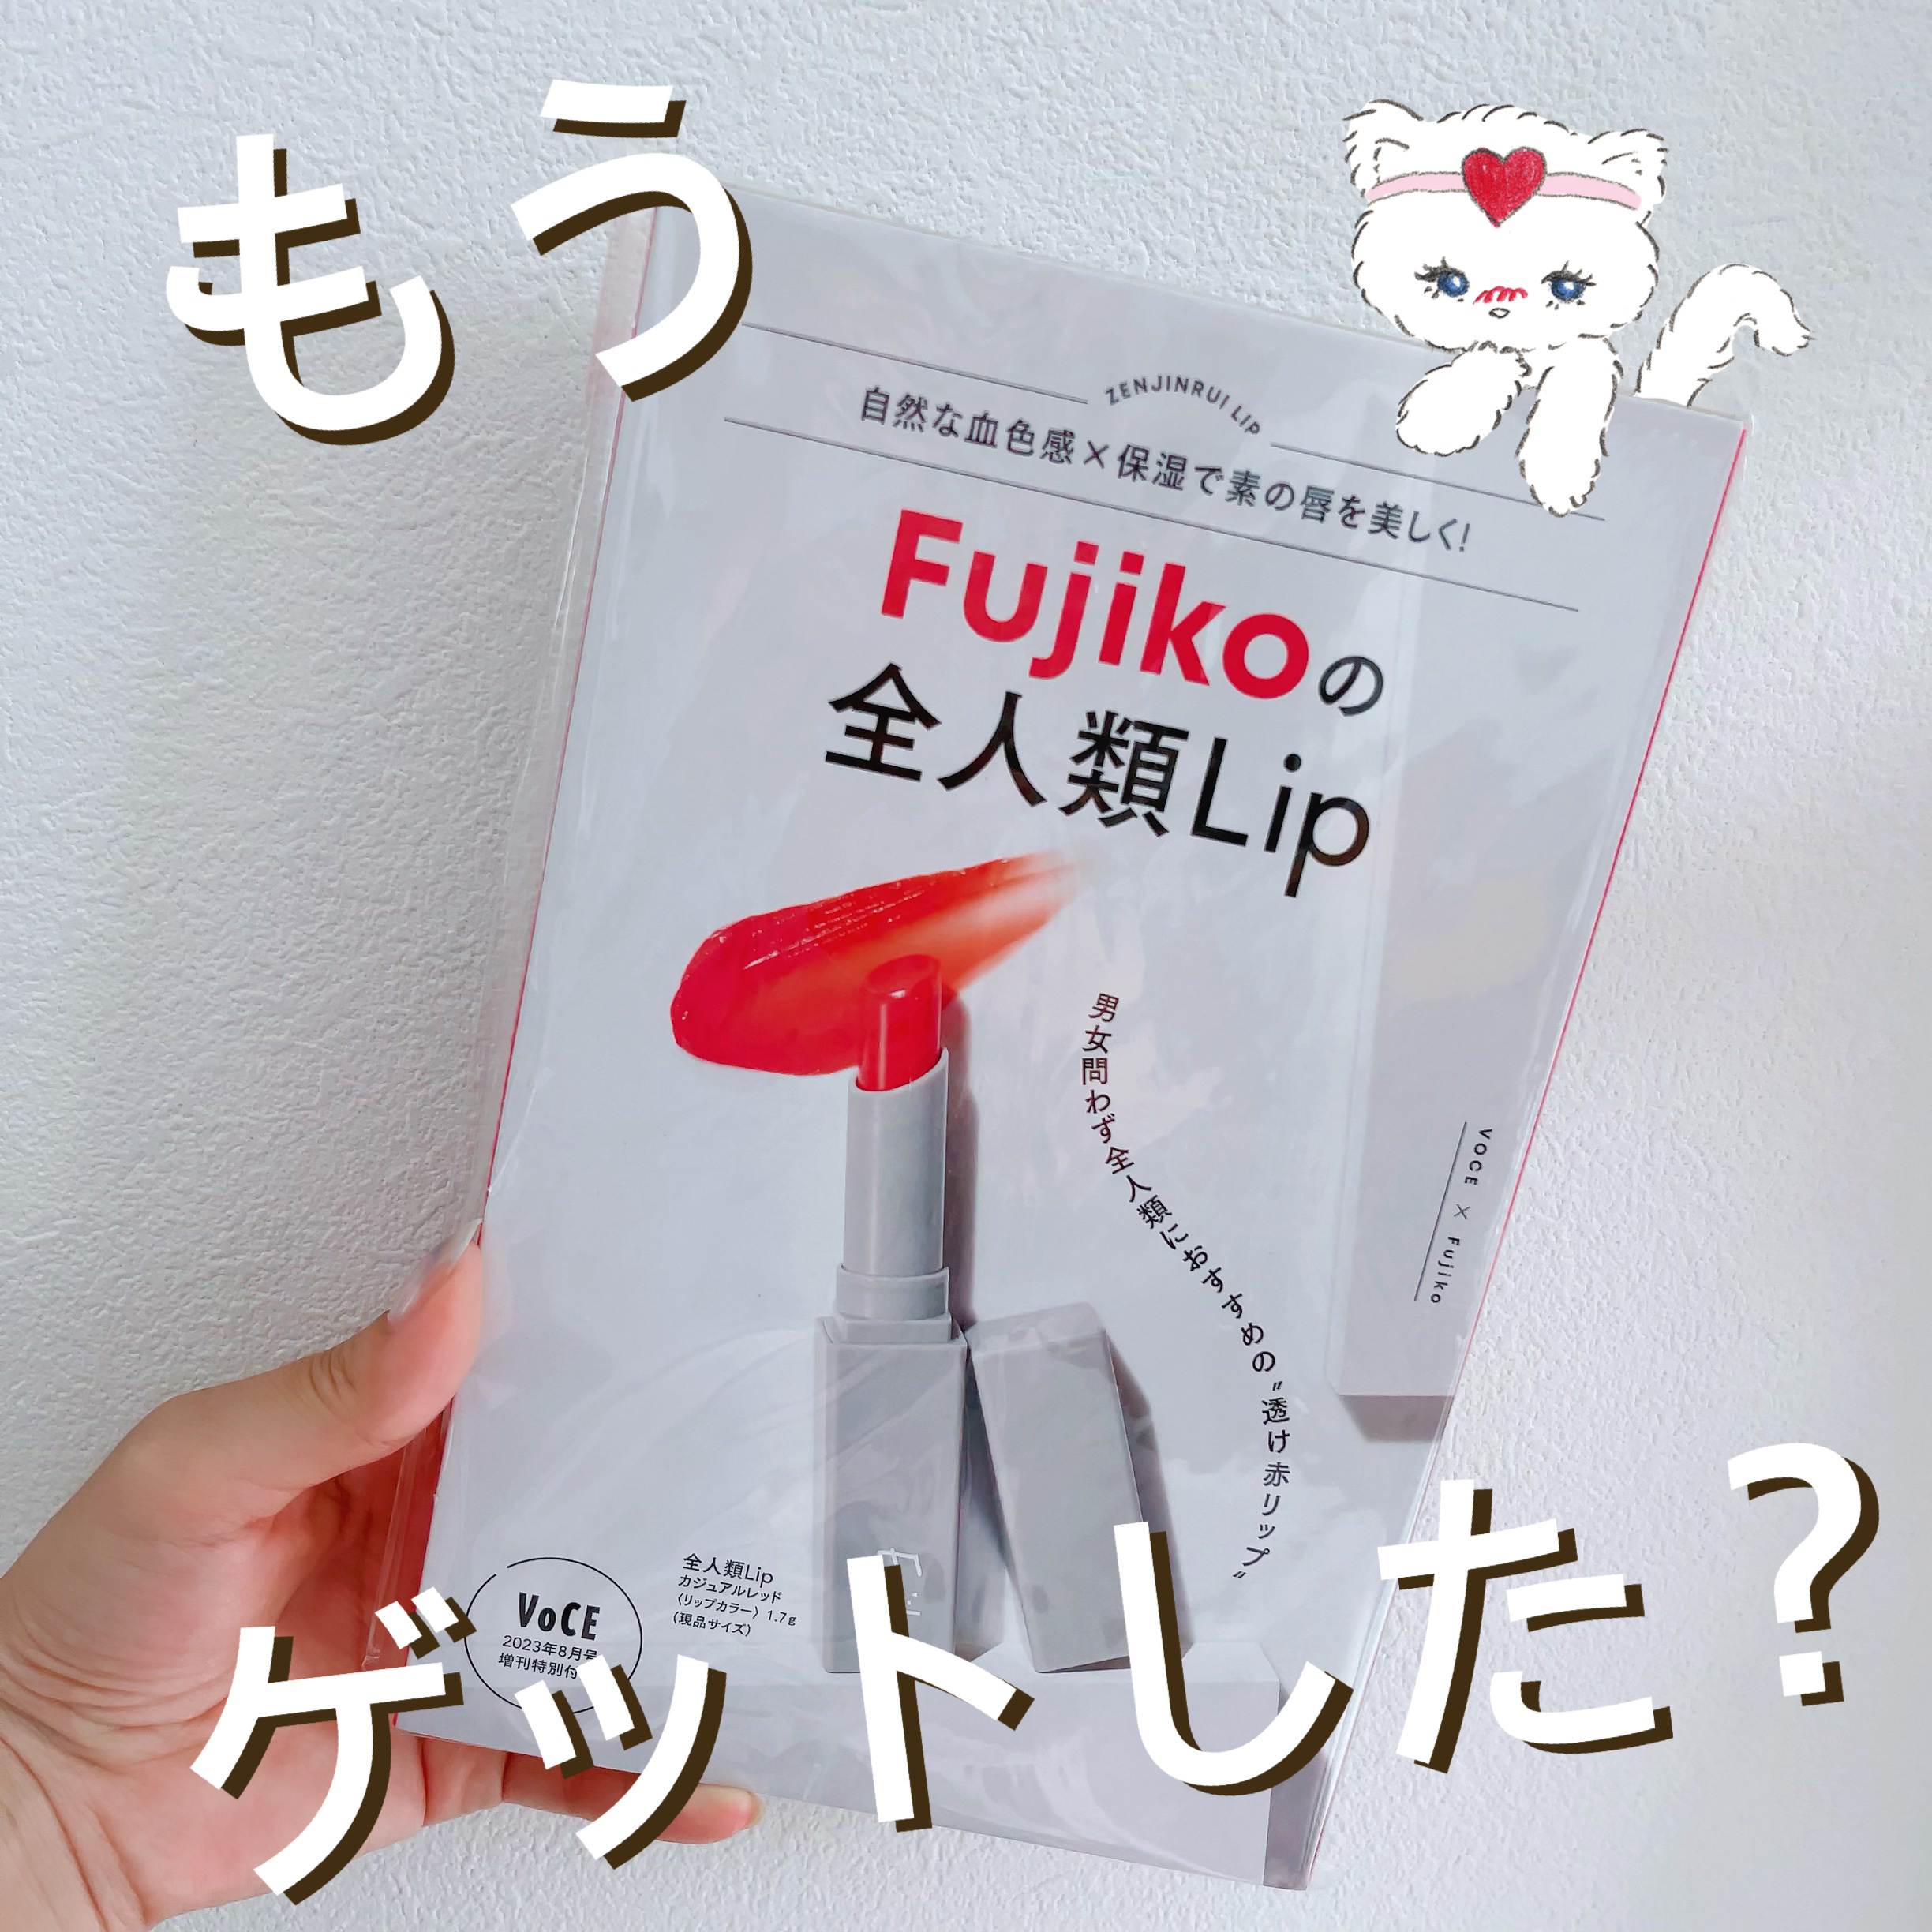 全人類Lip｜Fujikoを使った口コミ みなさん、もうゲットしました????？ by ふく(ﾌｫﾛﾊﾞ強化中✩.*˚)(普通肌/30代後半)  LIPS